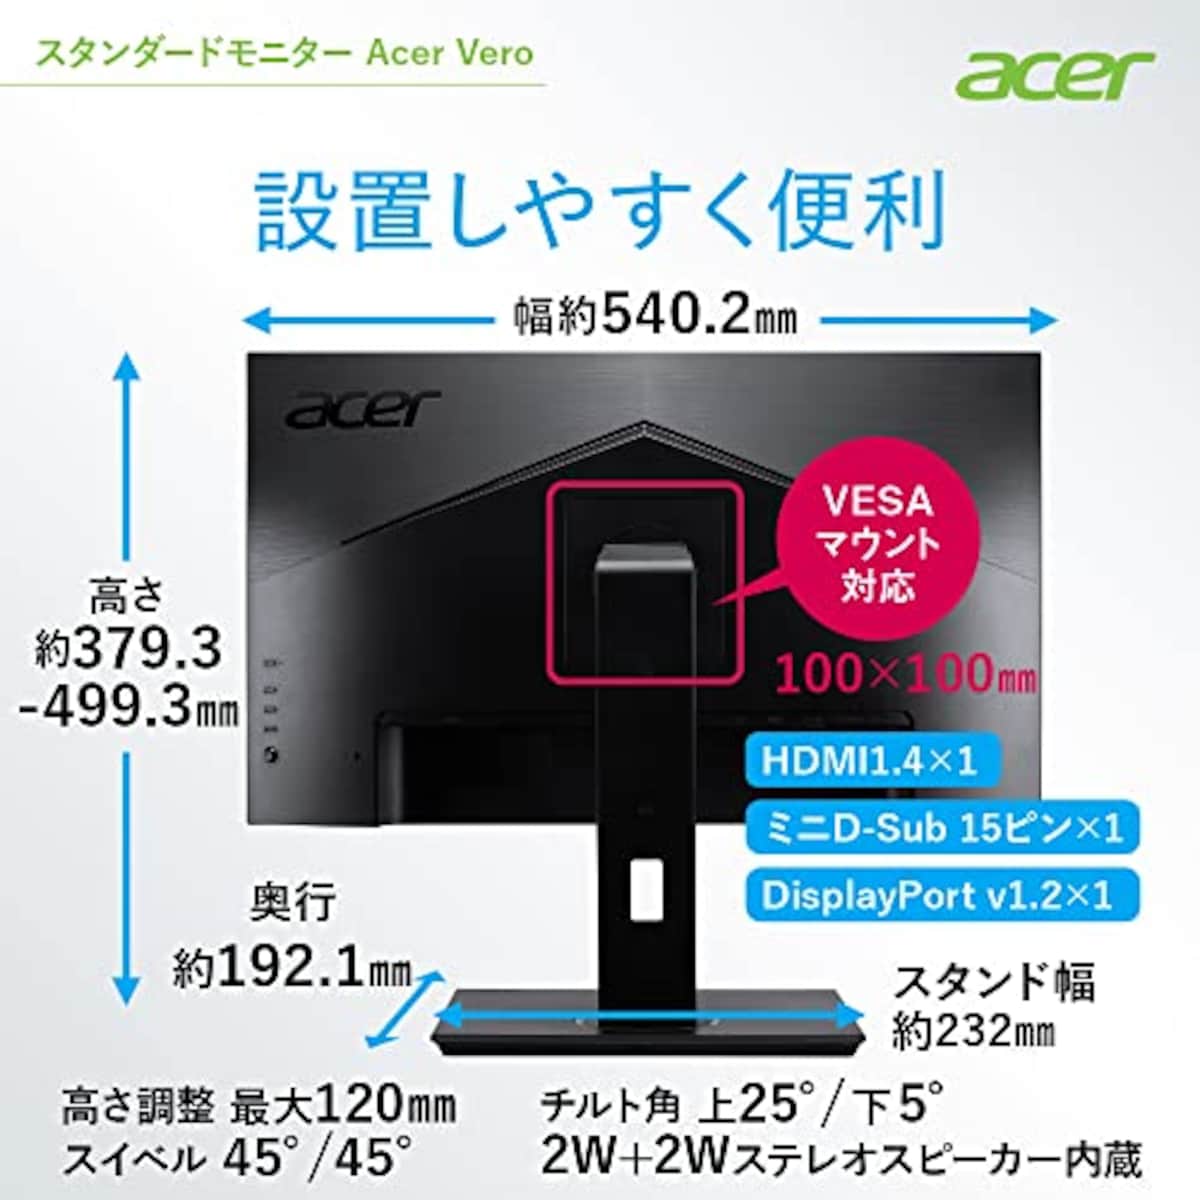  Acer モニター Vero BR247Ybmiprx 23.8インチ IPS 非光沢 フルHD 75Hz 4ms(GTG)Adaptive-Sync EPEAT Silver取得 VESAマウント対応 スピーカー内蔵 高さ調整 ピボット スイベル チルト スピーカー搭載 フリッカーレス ブルーライト軽減 フレームレスデザイン画像7 